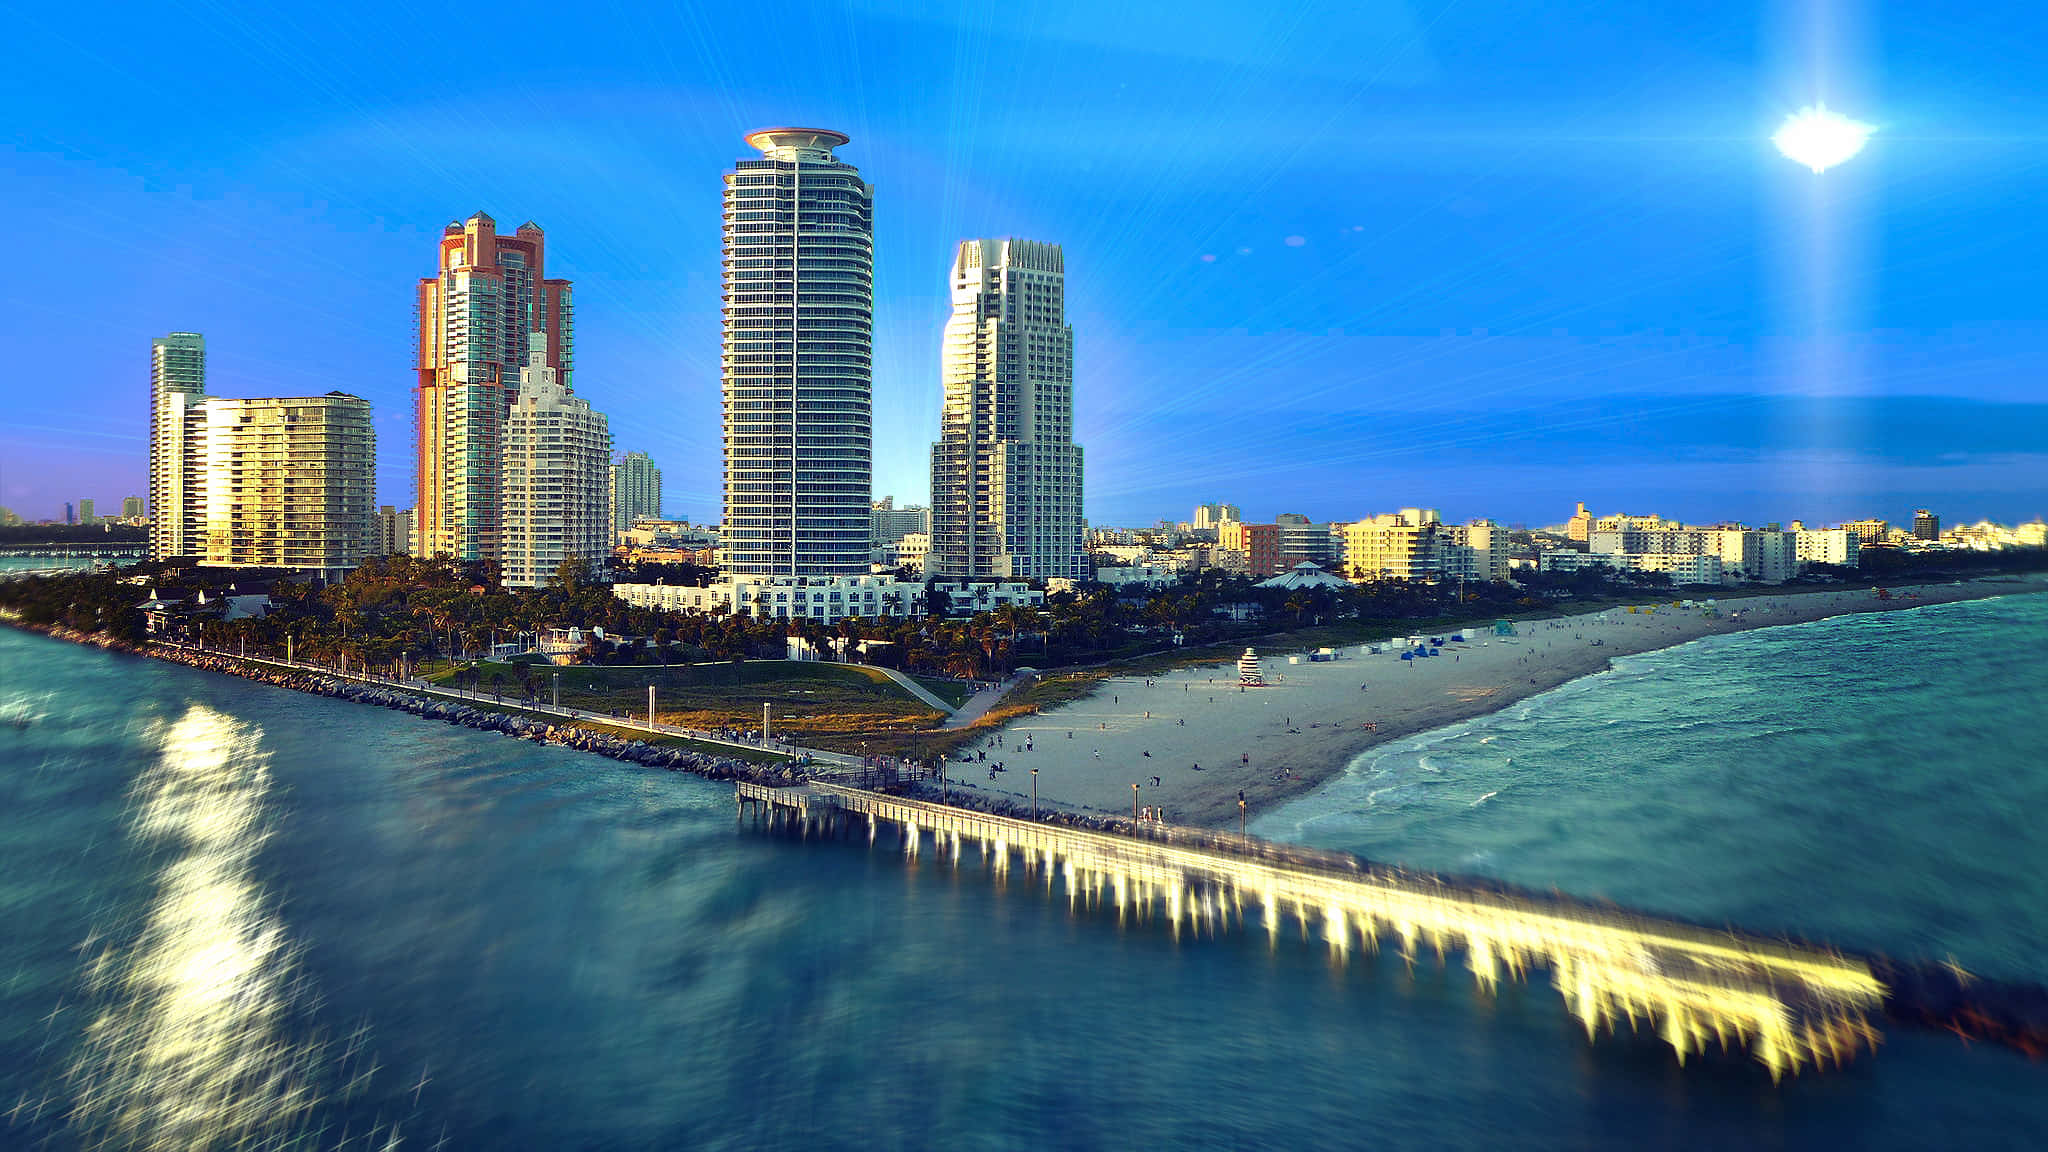 Benvenutia Miami, Il Cancello Dei Caraibi.